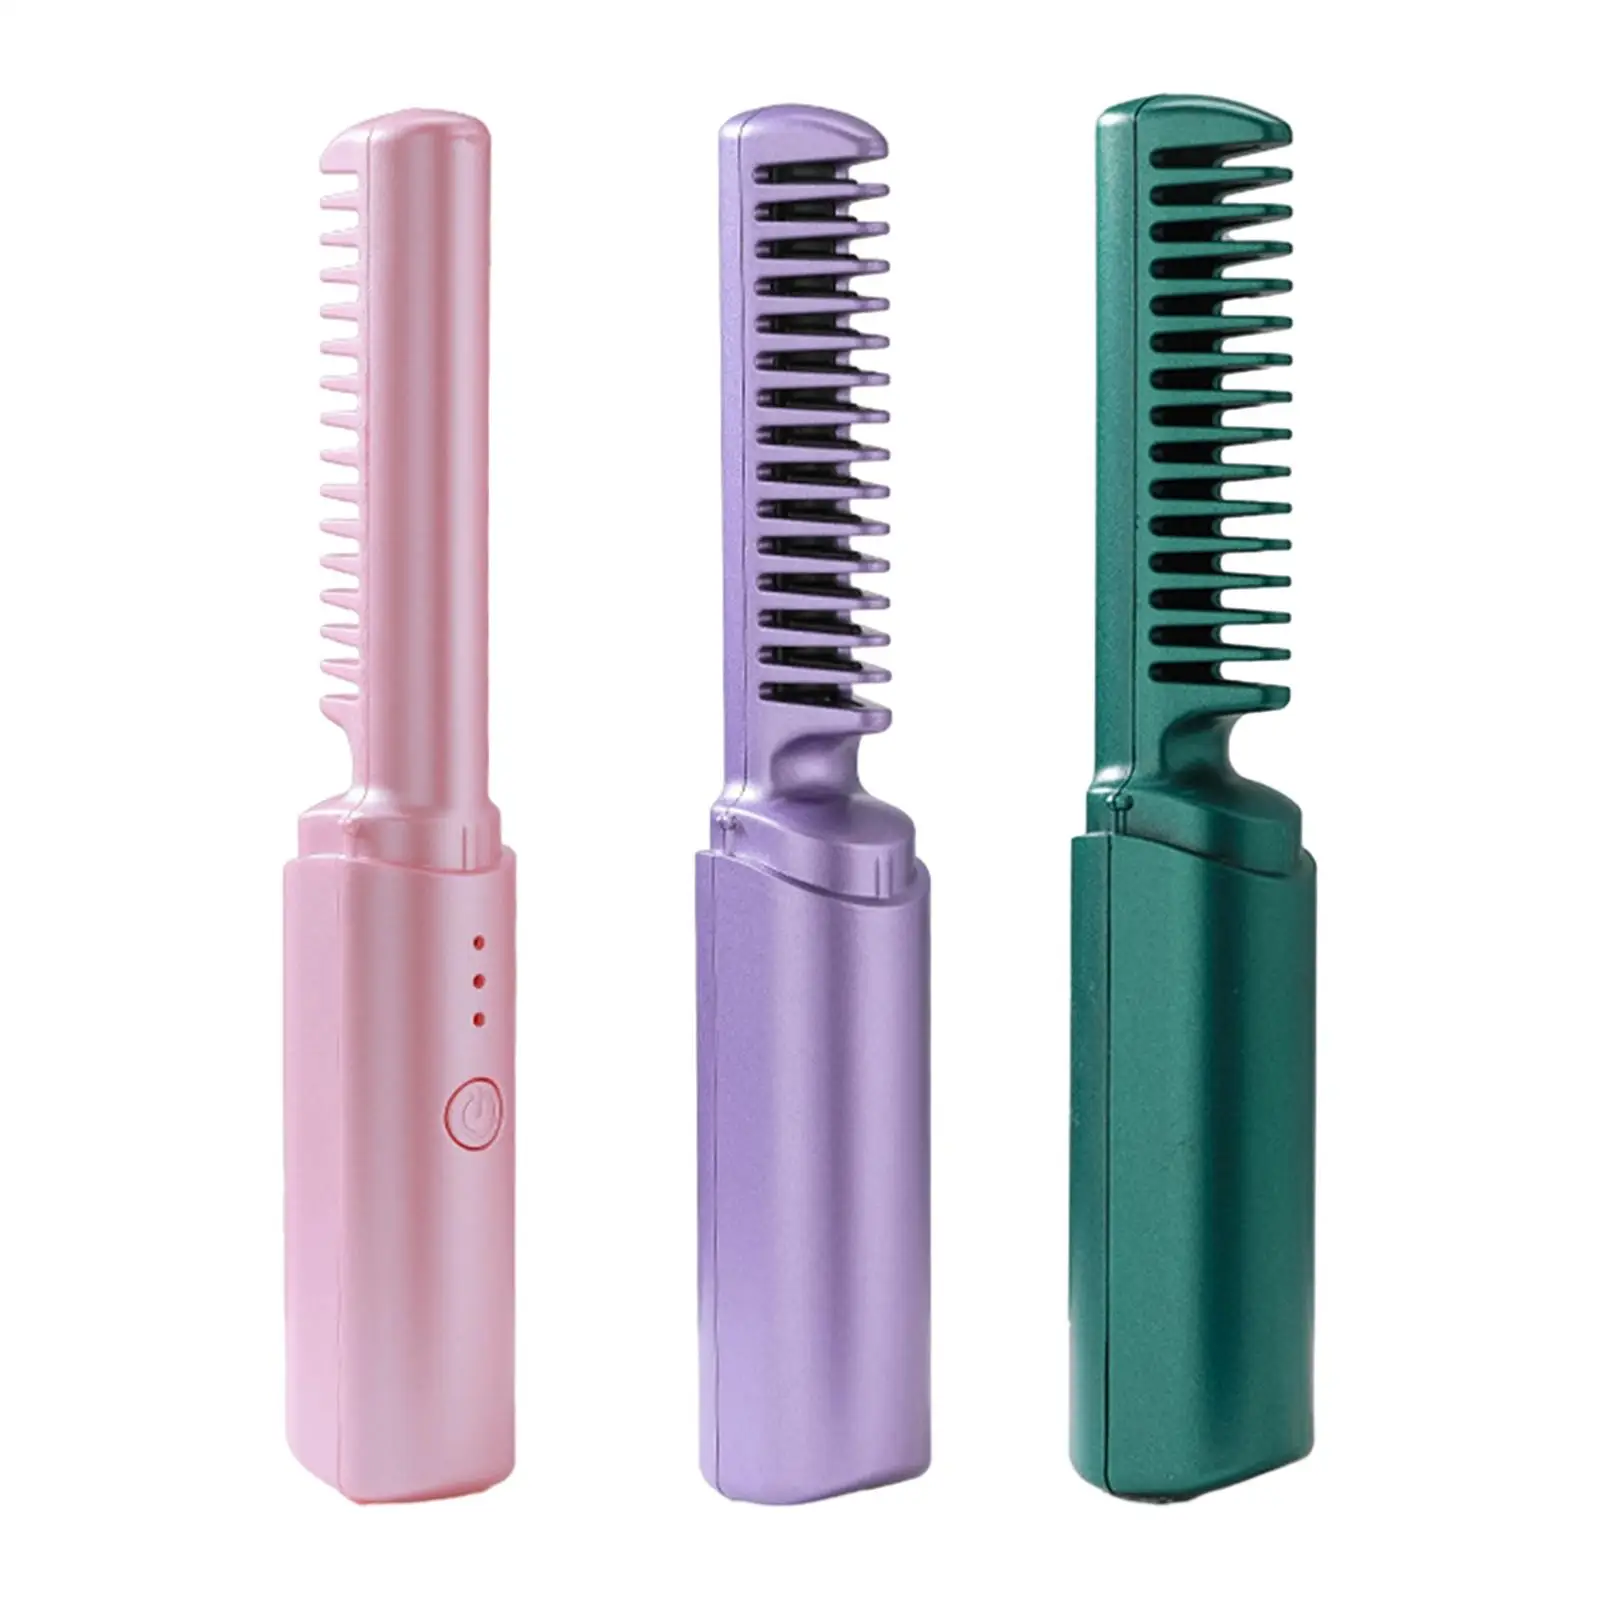 Cordless Hair Straightener Brush Fast Heating Straightening Brush Women